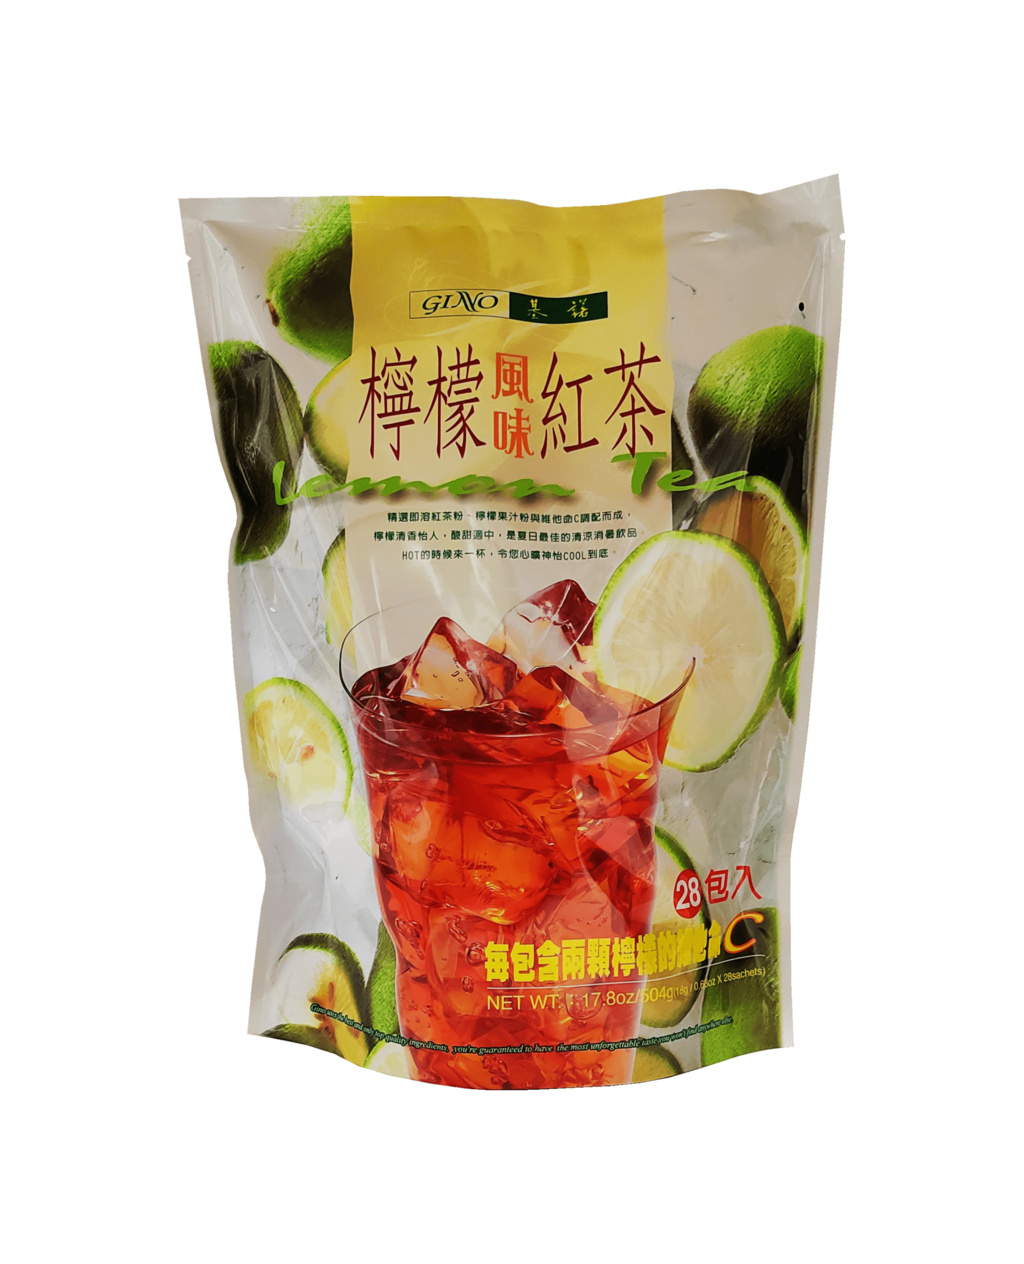 柠檬风味红茶粉 504g (20包) 基诺 台湾